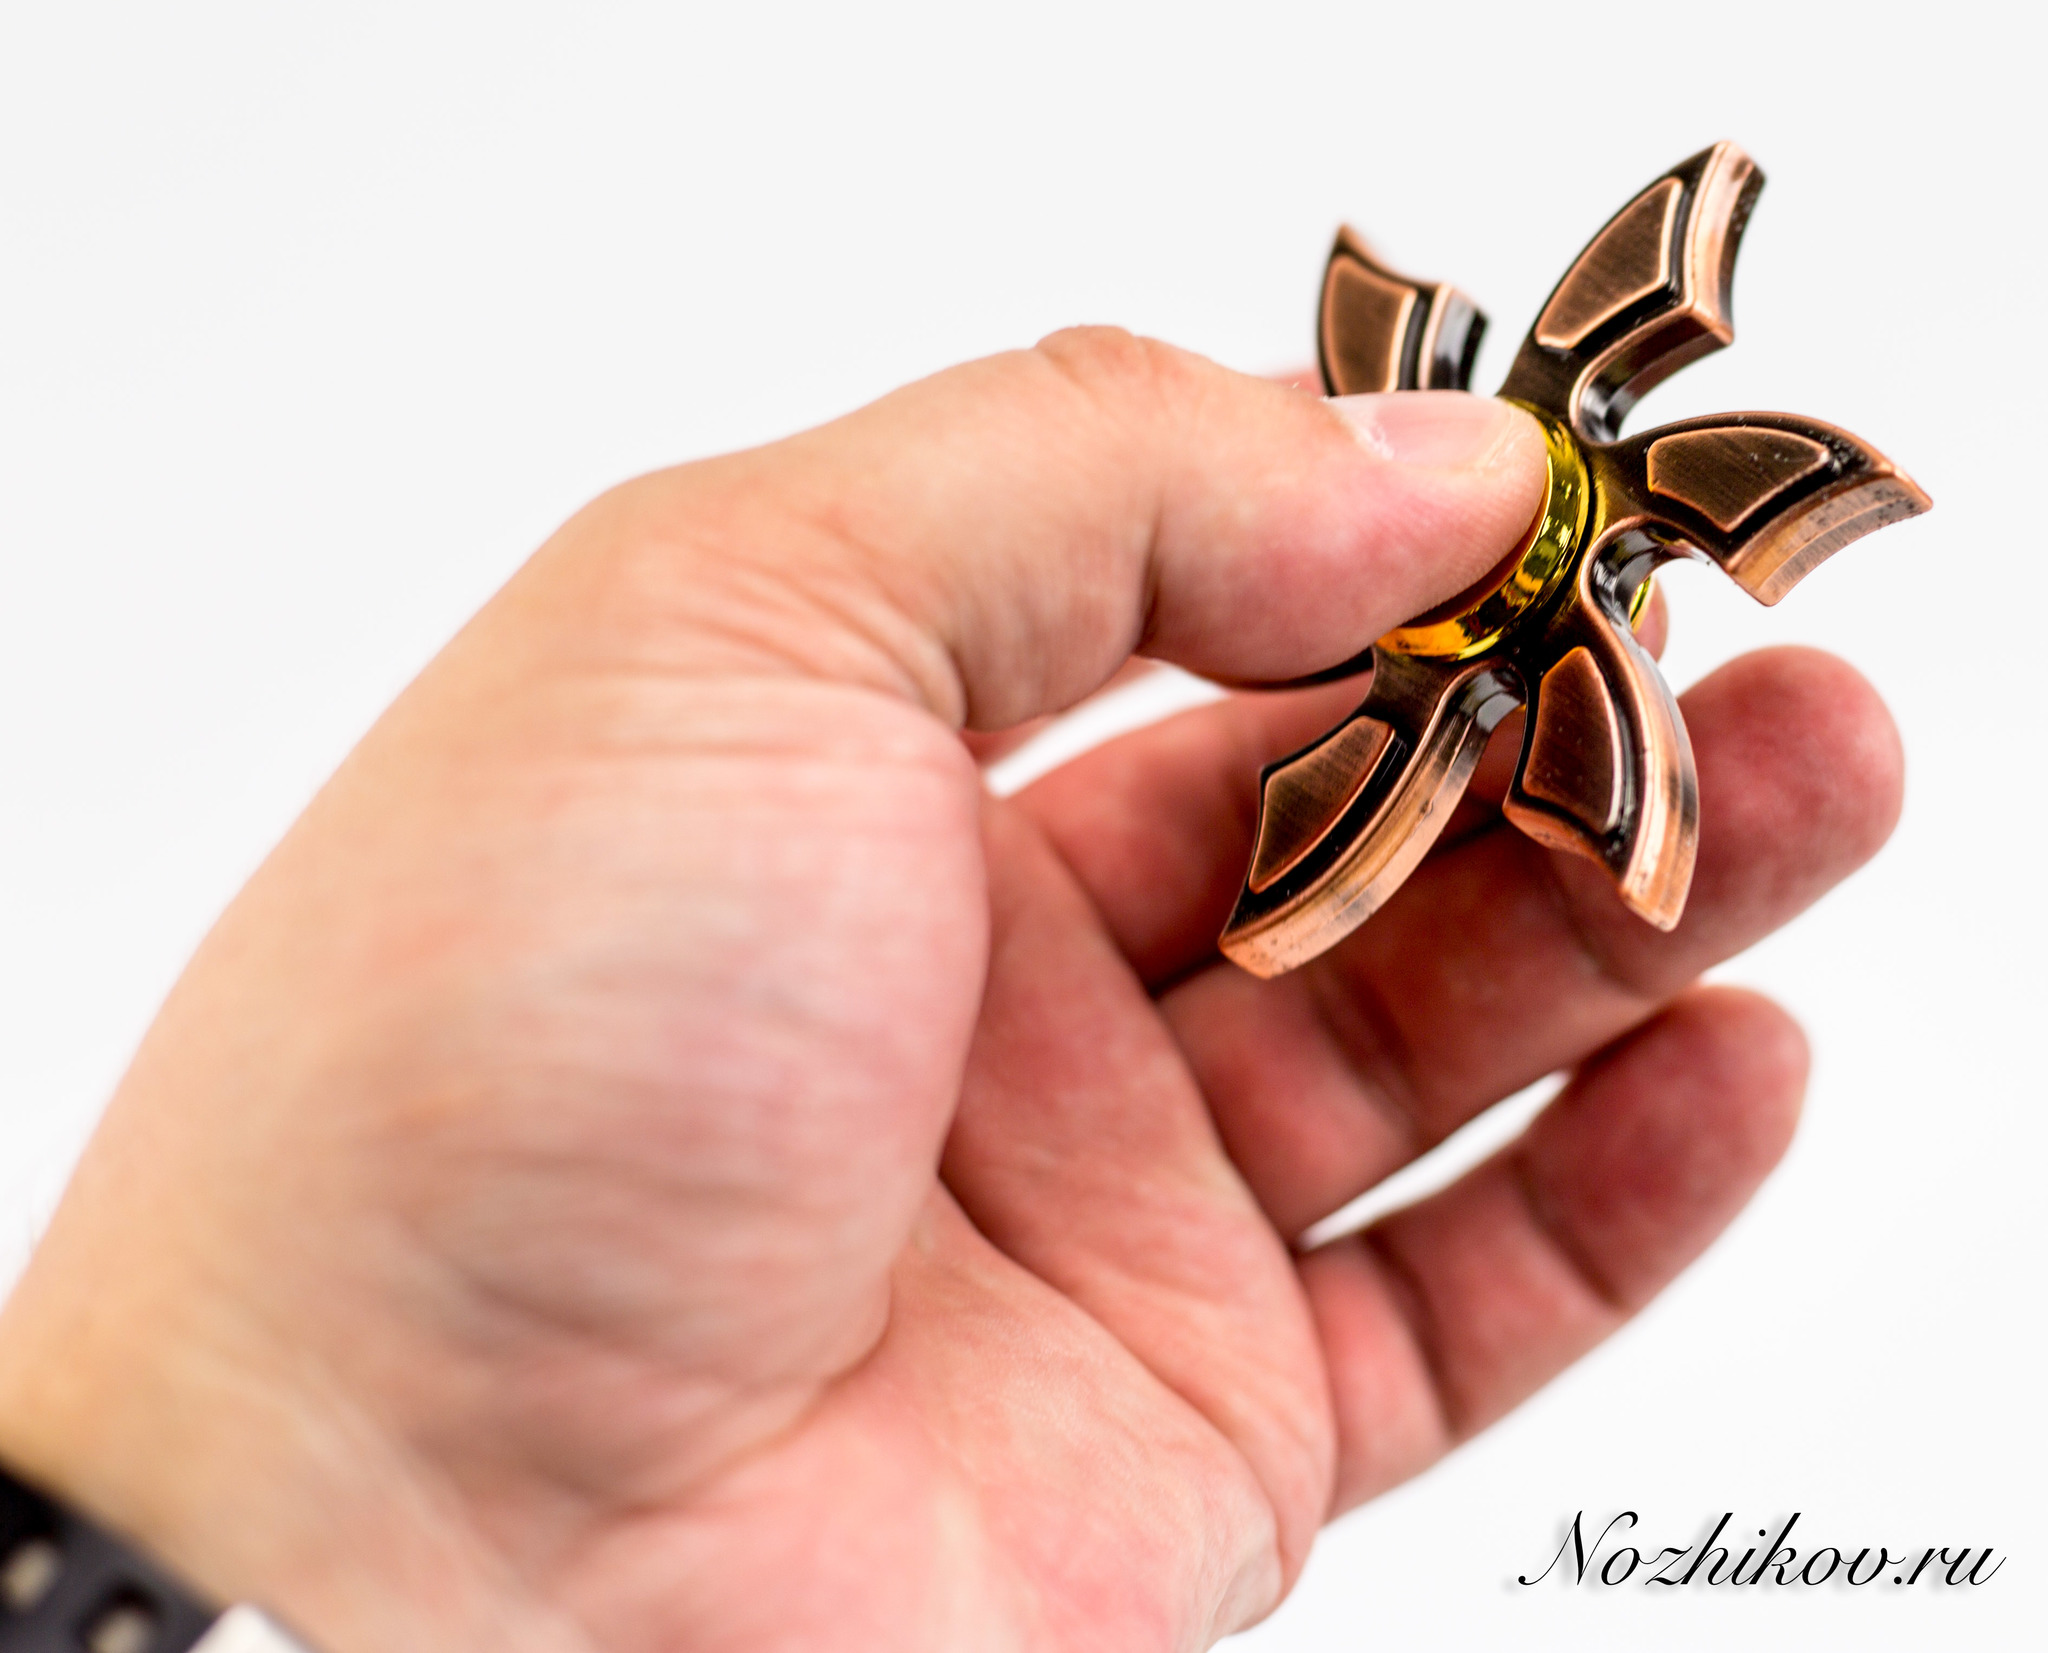 Спиннер (Hand Spinner) Медный цветок от Ножиков